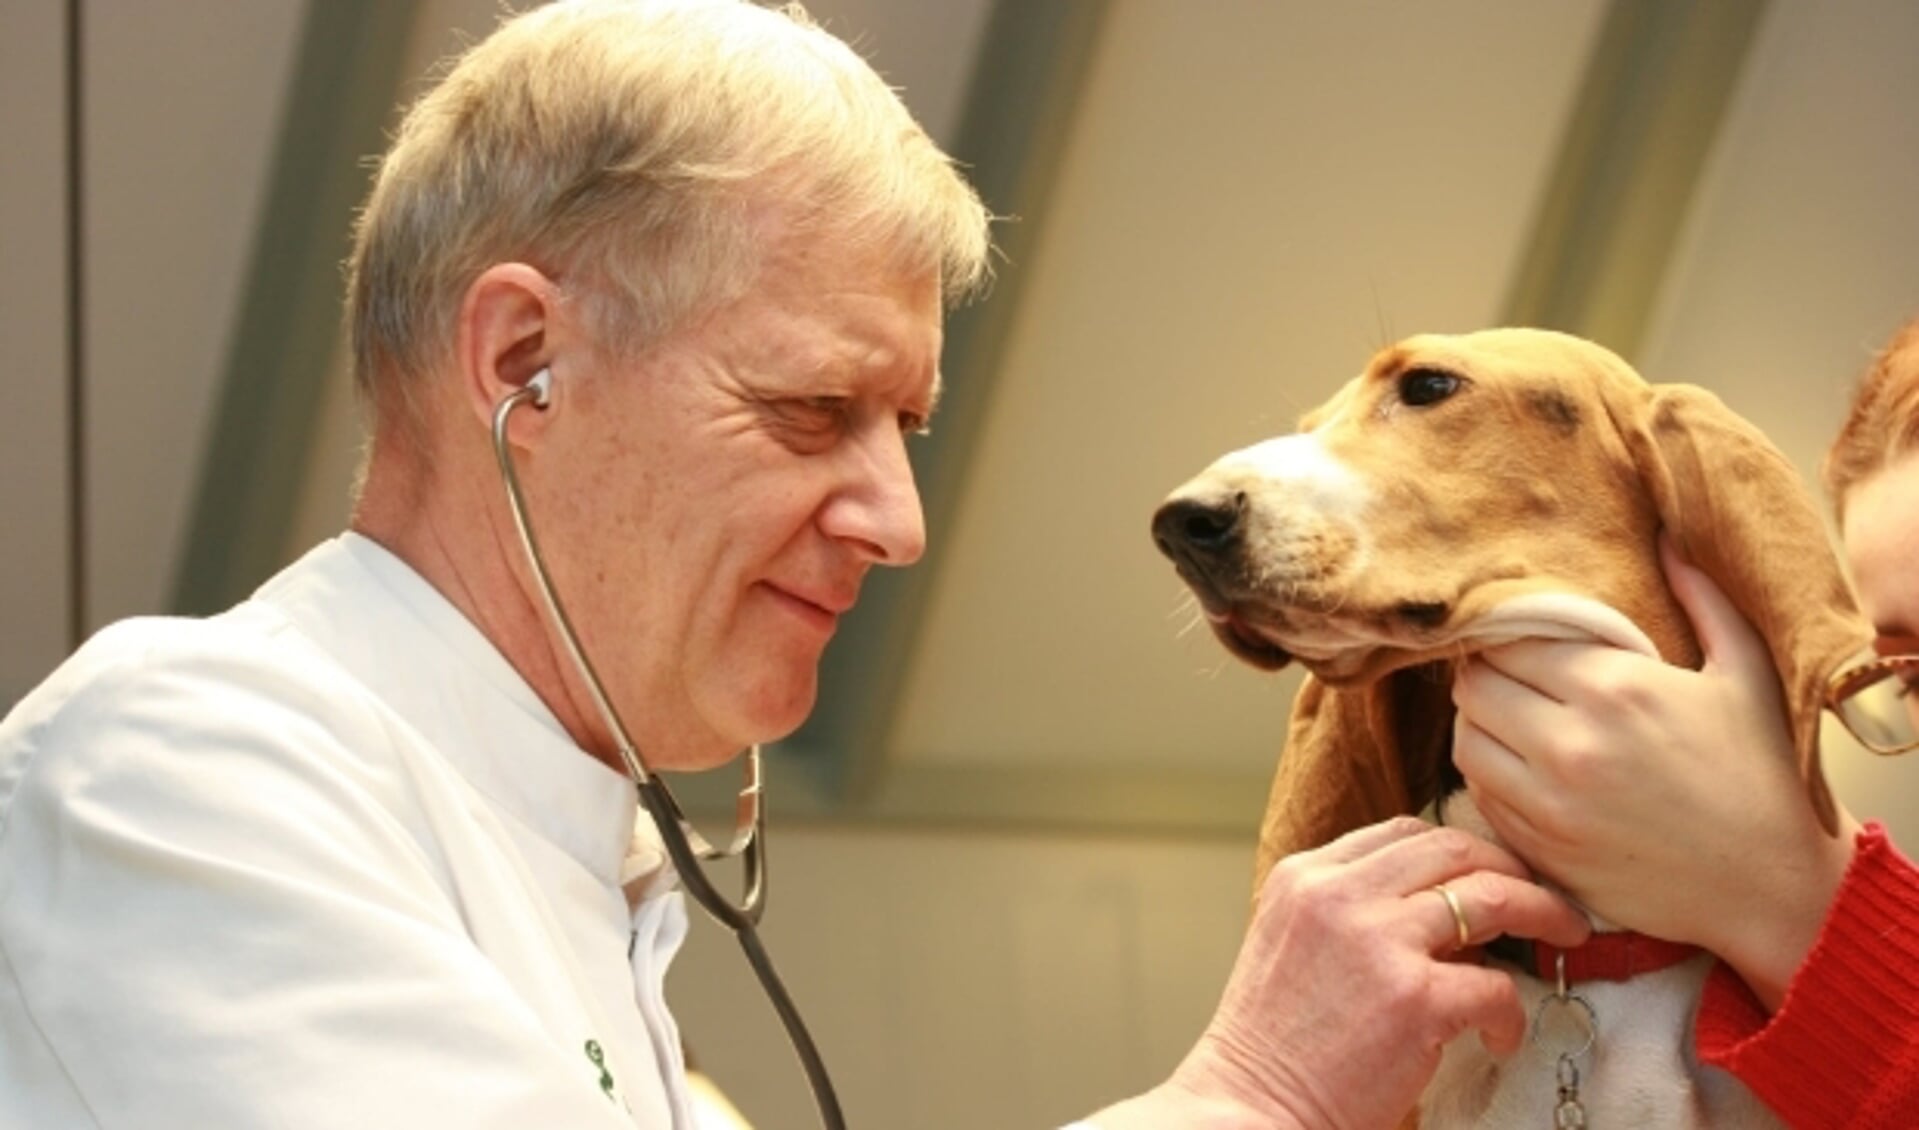 Dierenarts Wouter Smole onderzoekt één van zijn 'patiënten' tijdens het spreekuur. De dierenartsenpraktijk sluit na 45 jaar. Foto: Dierenartsenpraktijk Smole  